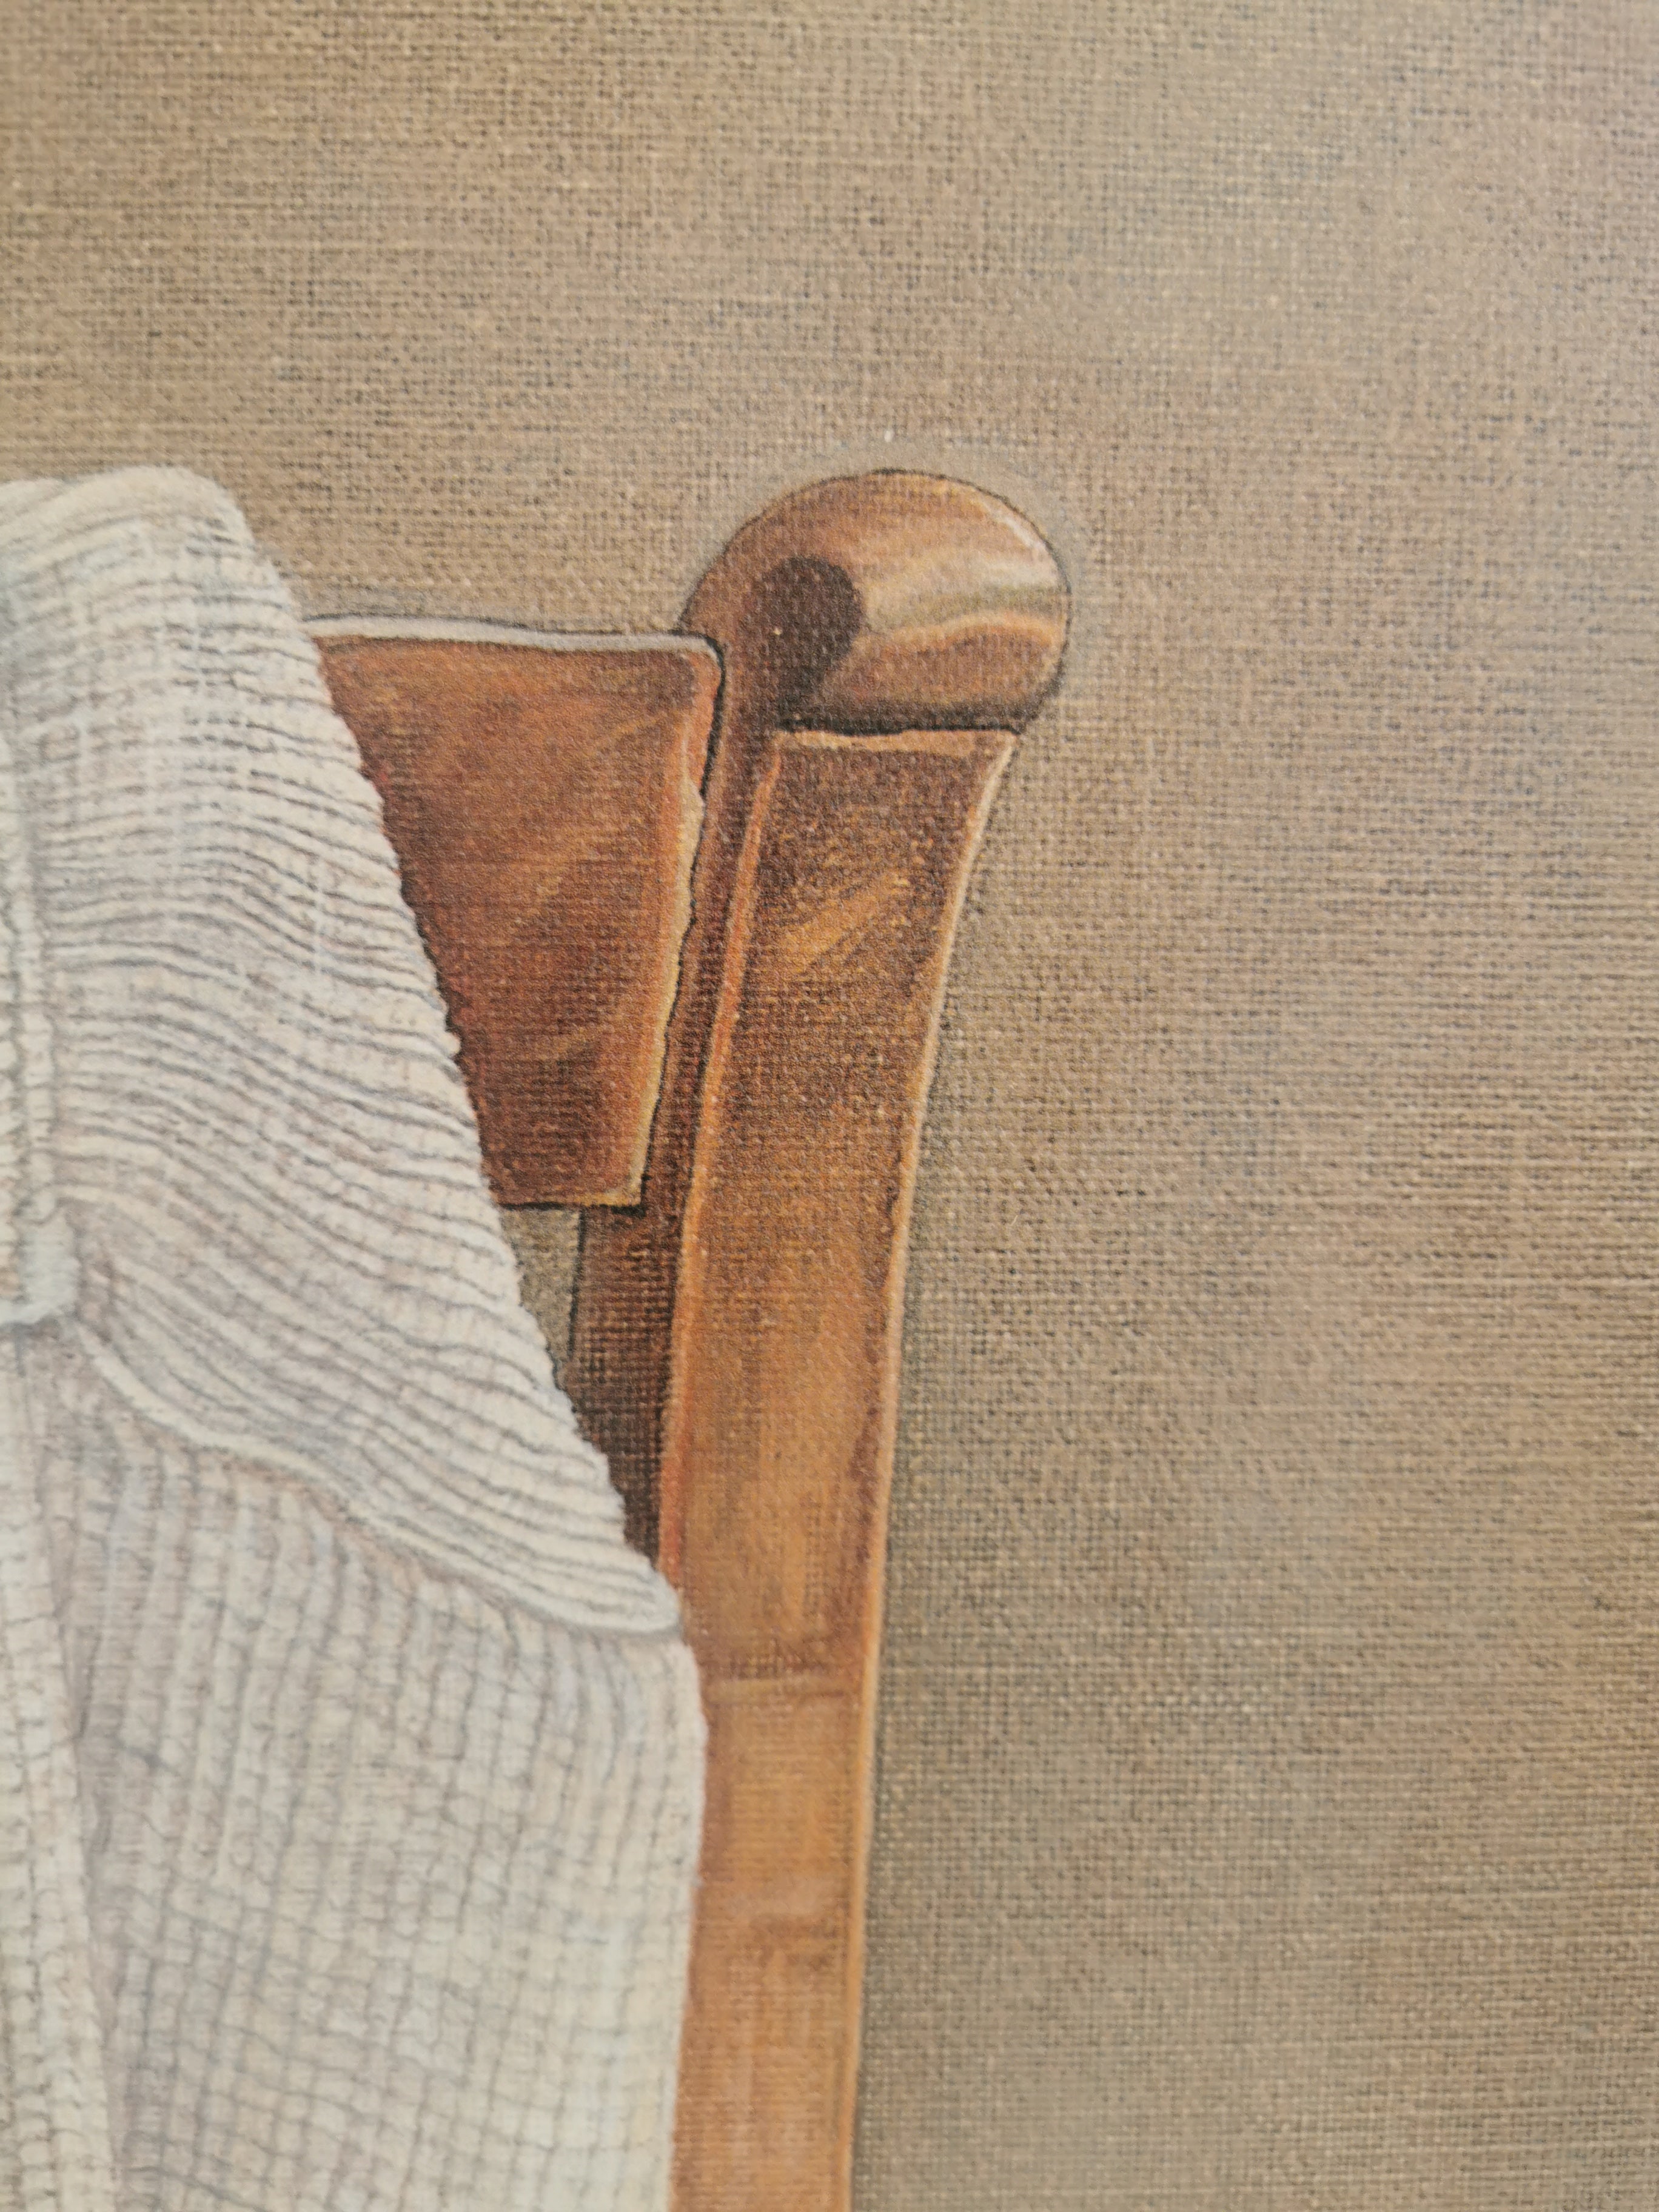 Jopie Huisman - Borstrok op Deventer stoel 1980| Giclée op canvas